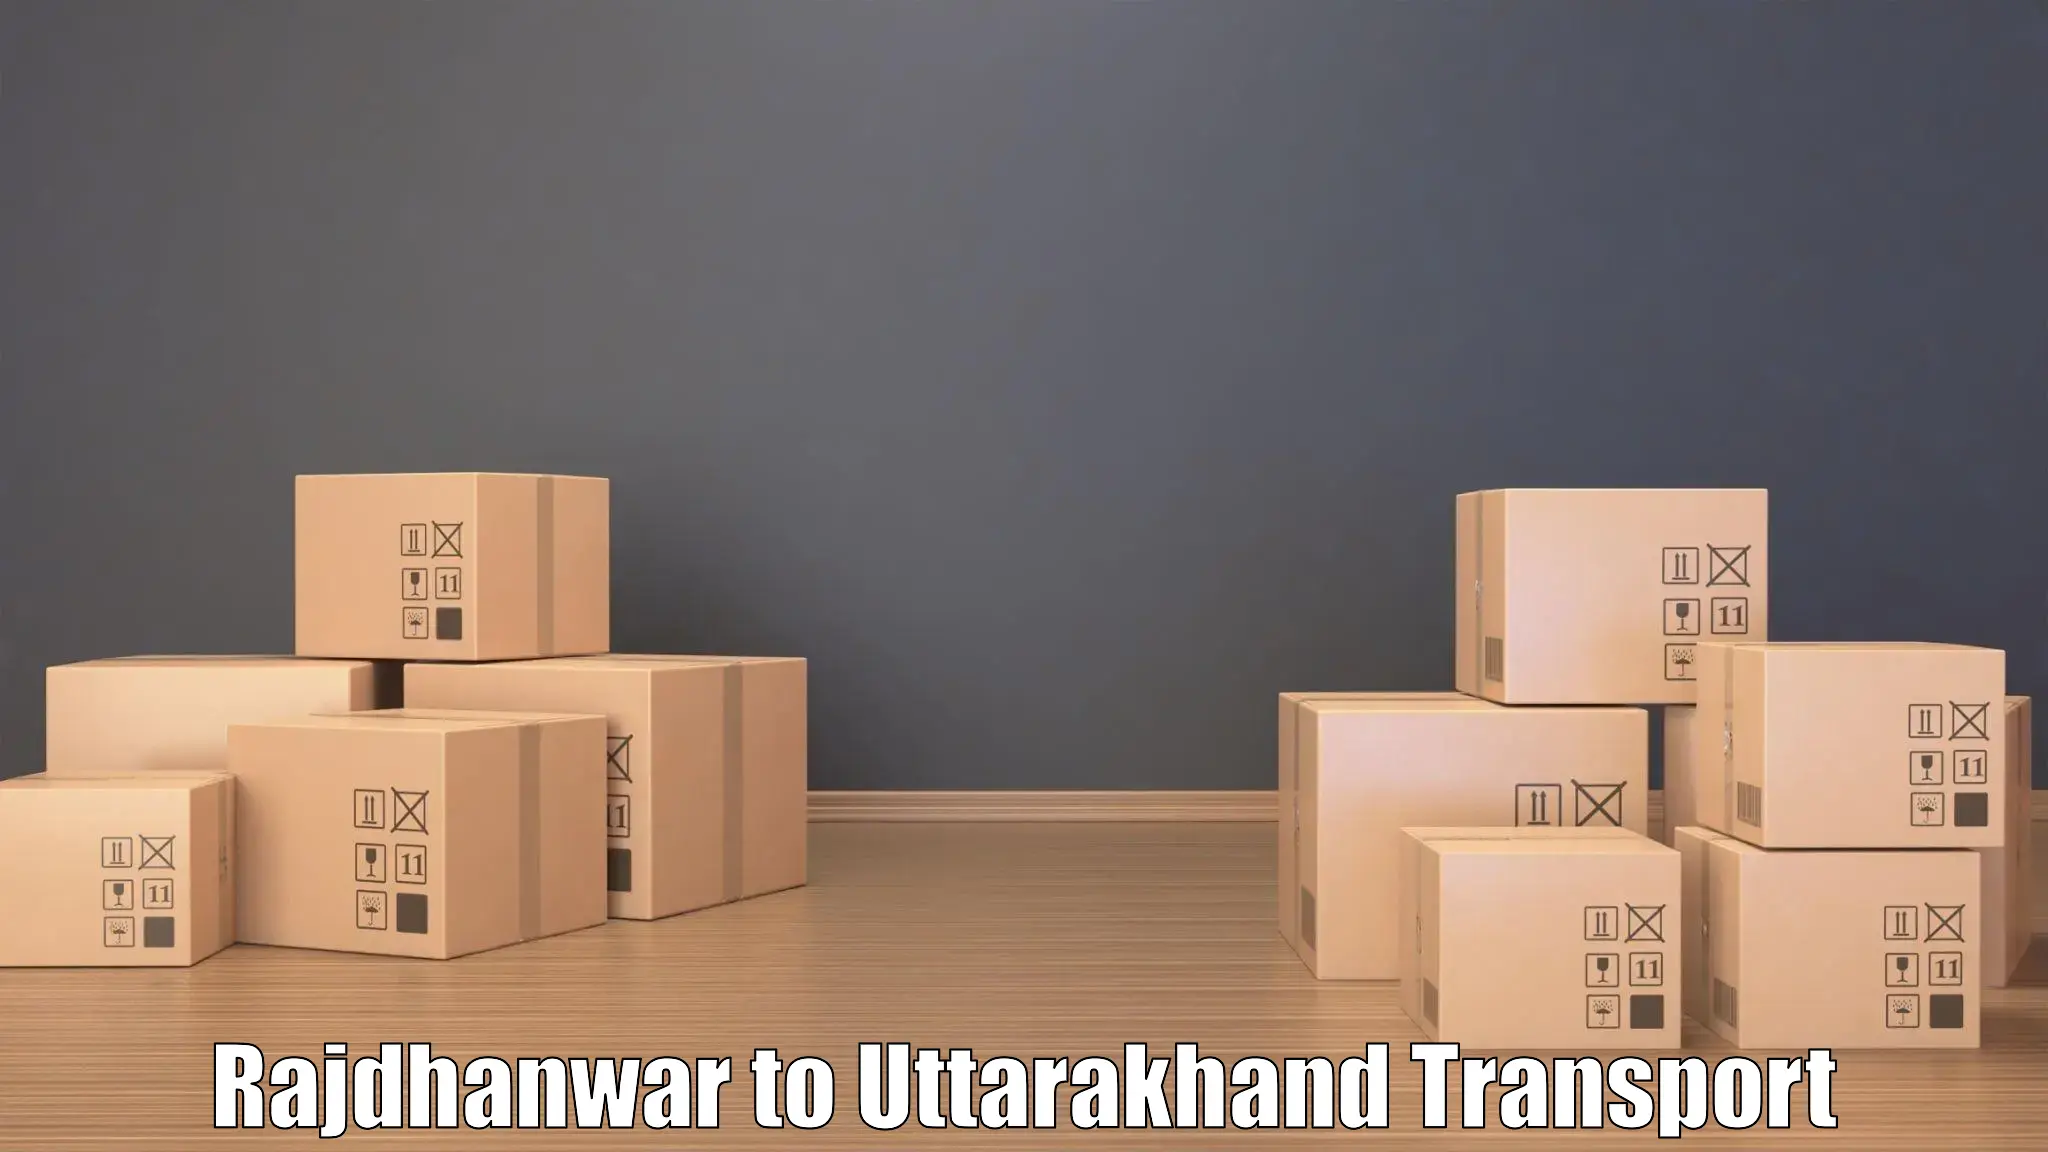 Lorry transport service Rajdhanwar to Tehri Garhwal